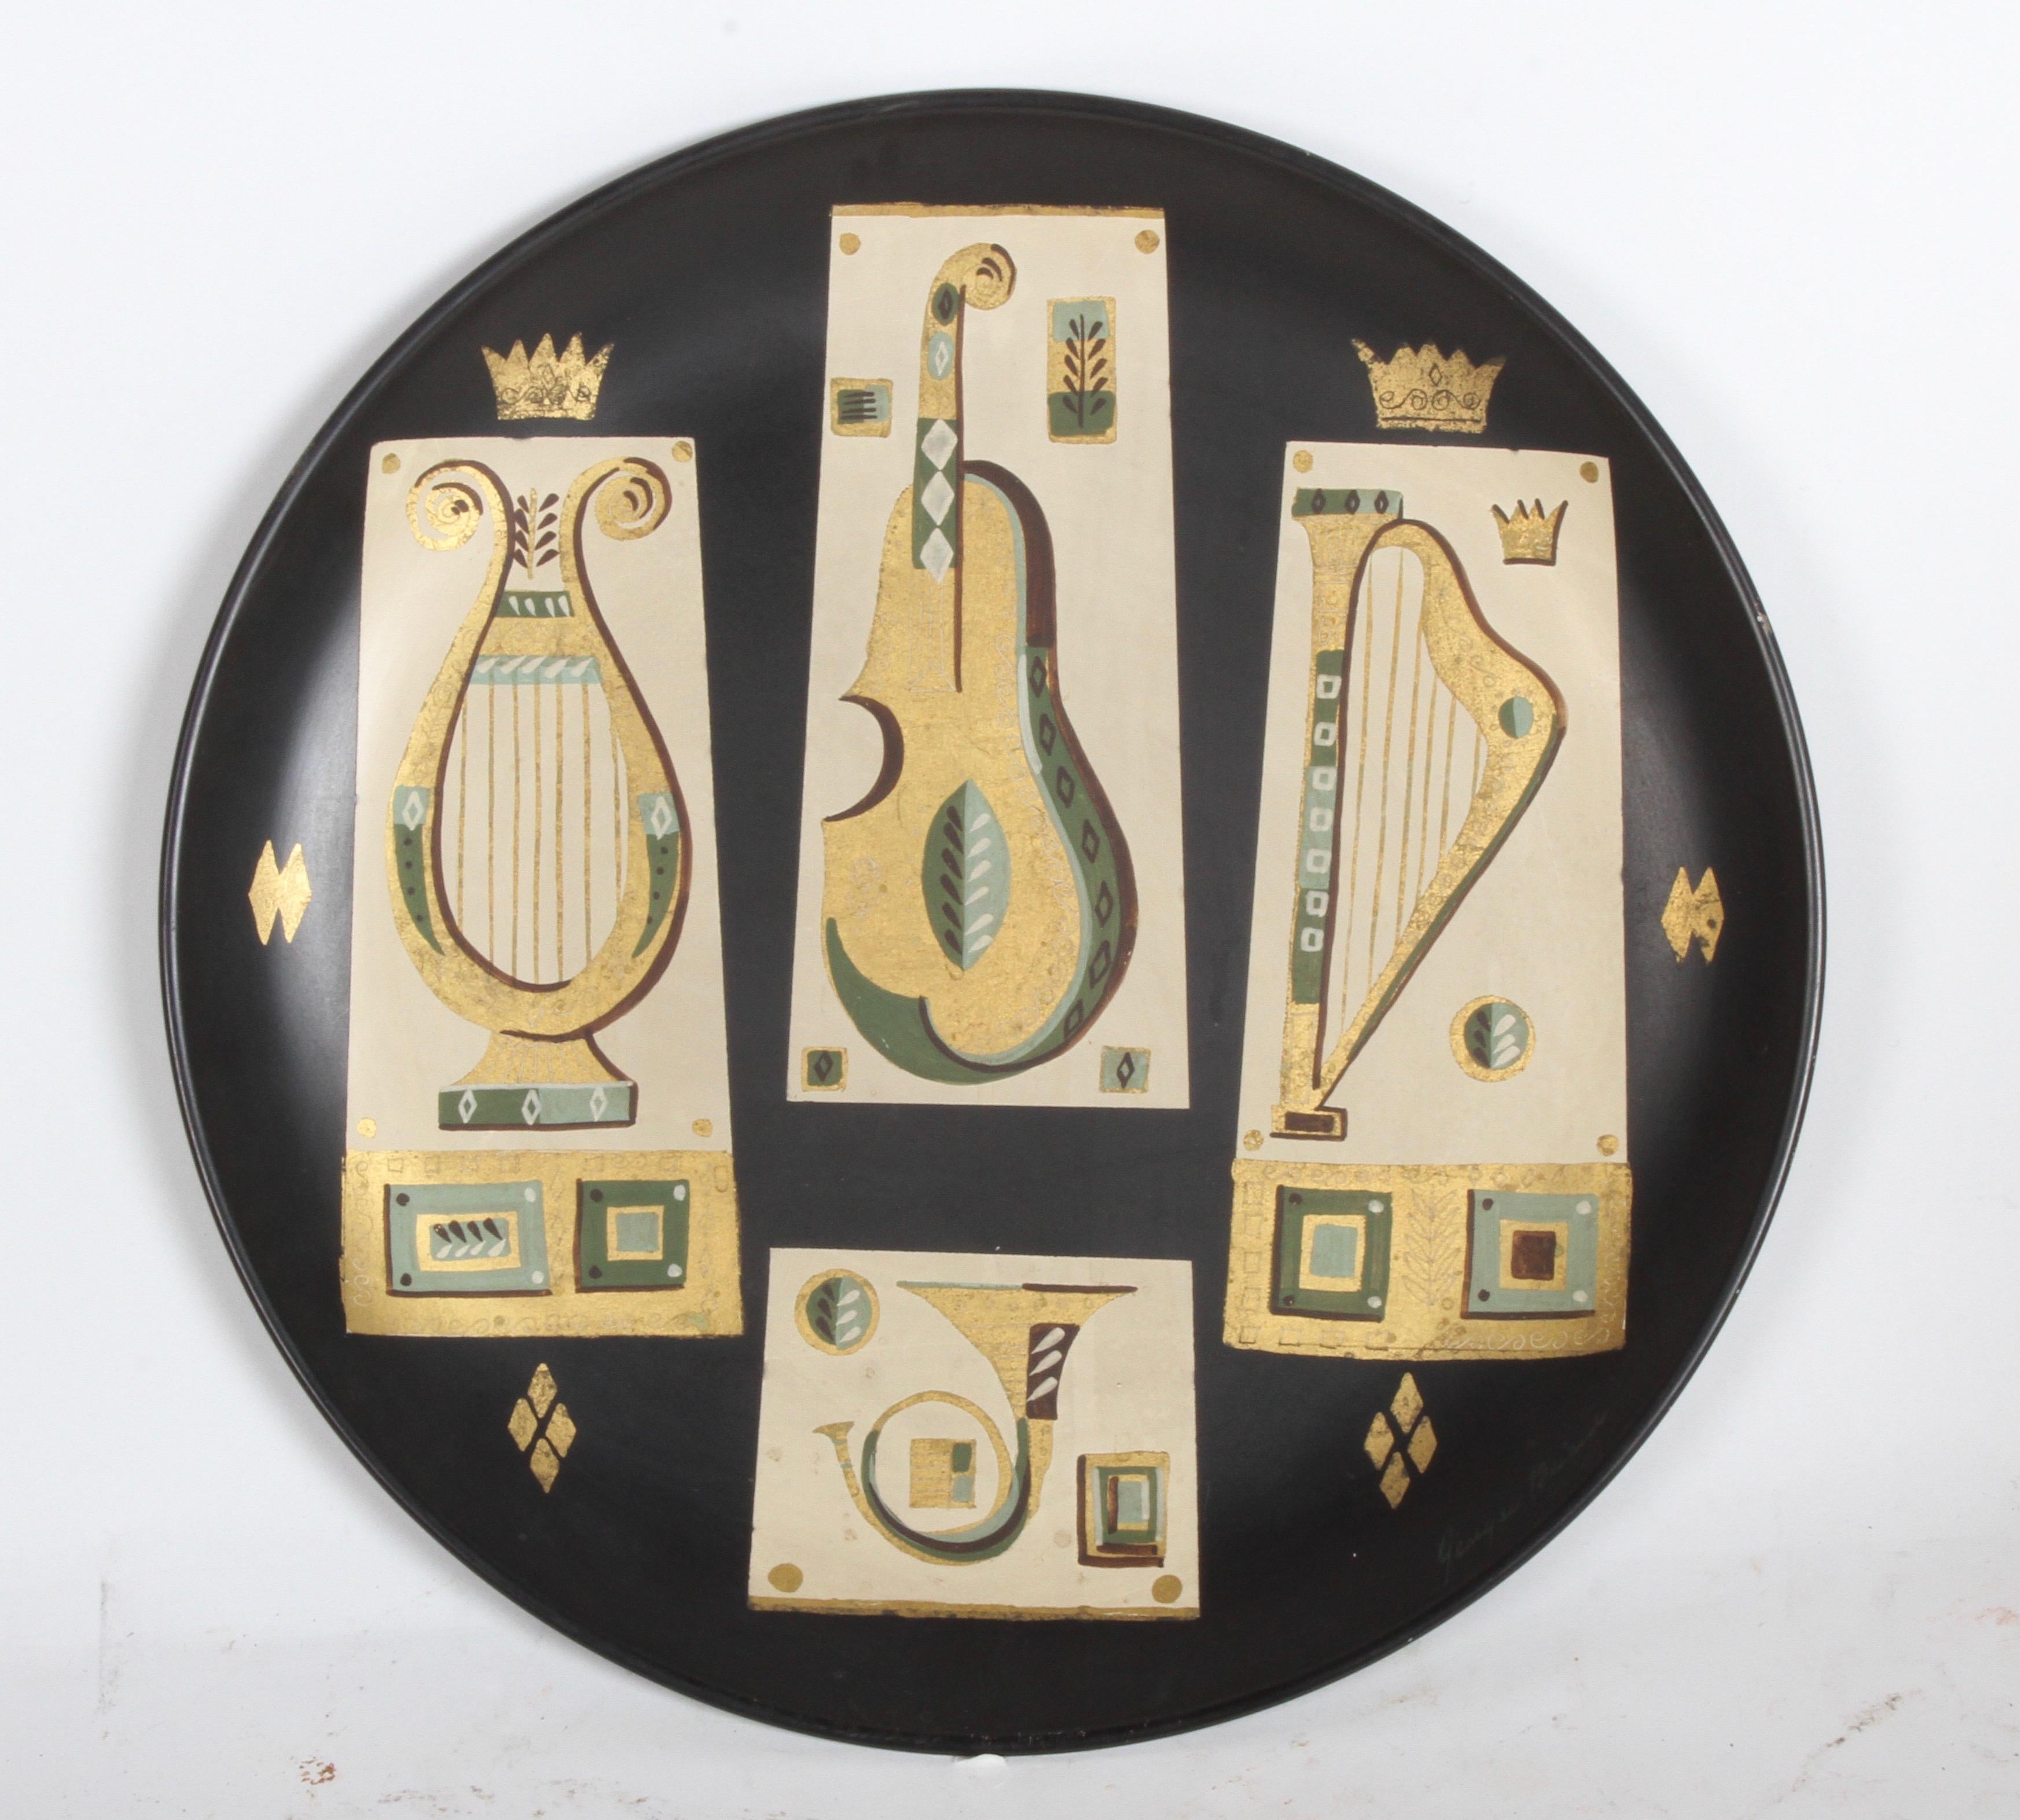 Grand plateau en métal Georges Briard conçu pour être accroché au mur, ayant des instruments de musique à thème peints à la main et dorés à l'or fin avec la basse, la harpe et le cor. Possède une étiquette au dos lors de son achat en 1955. Signé en